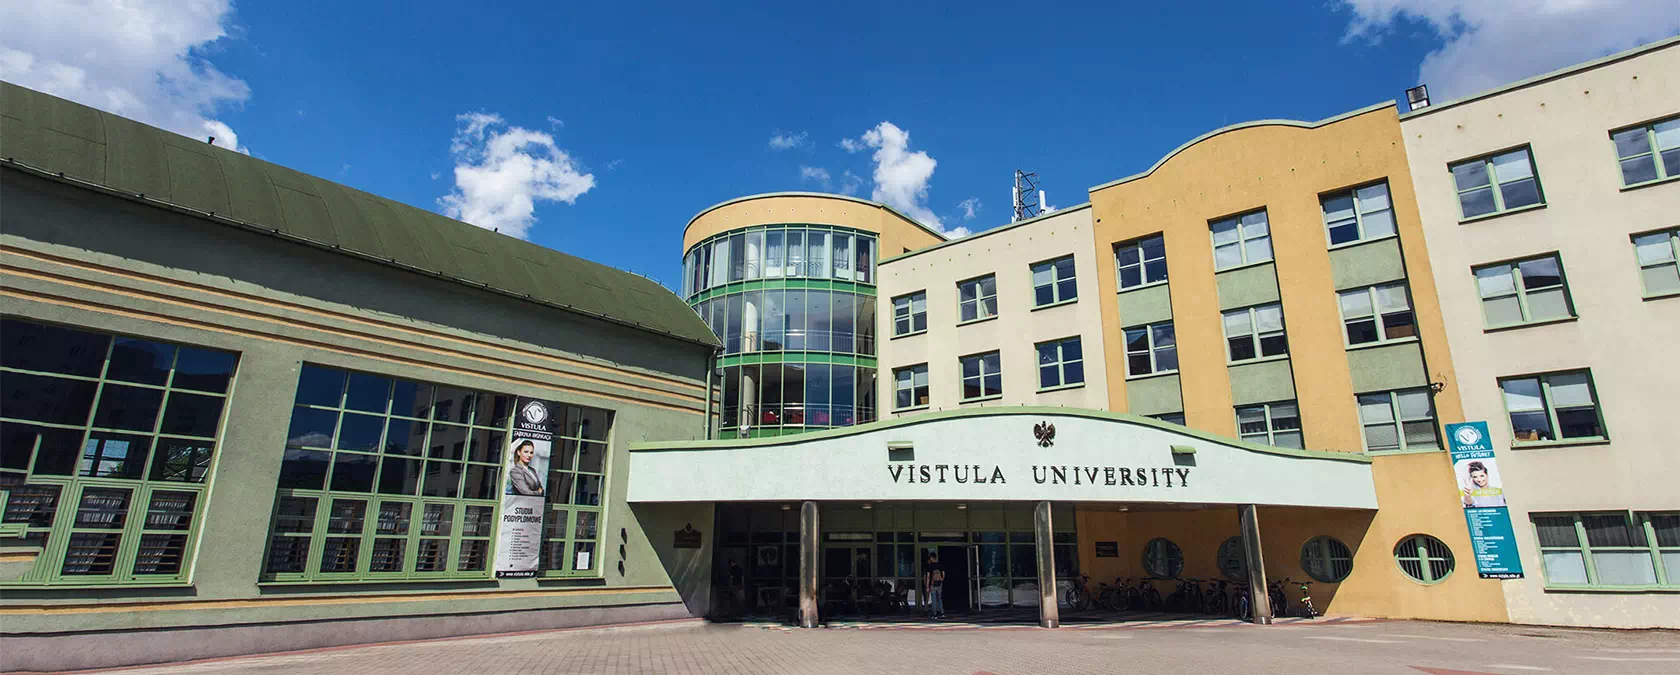 Vistula Üniversitesi